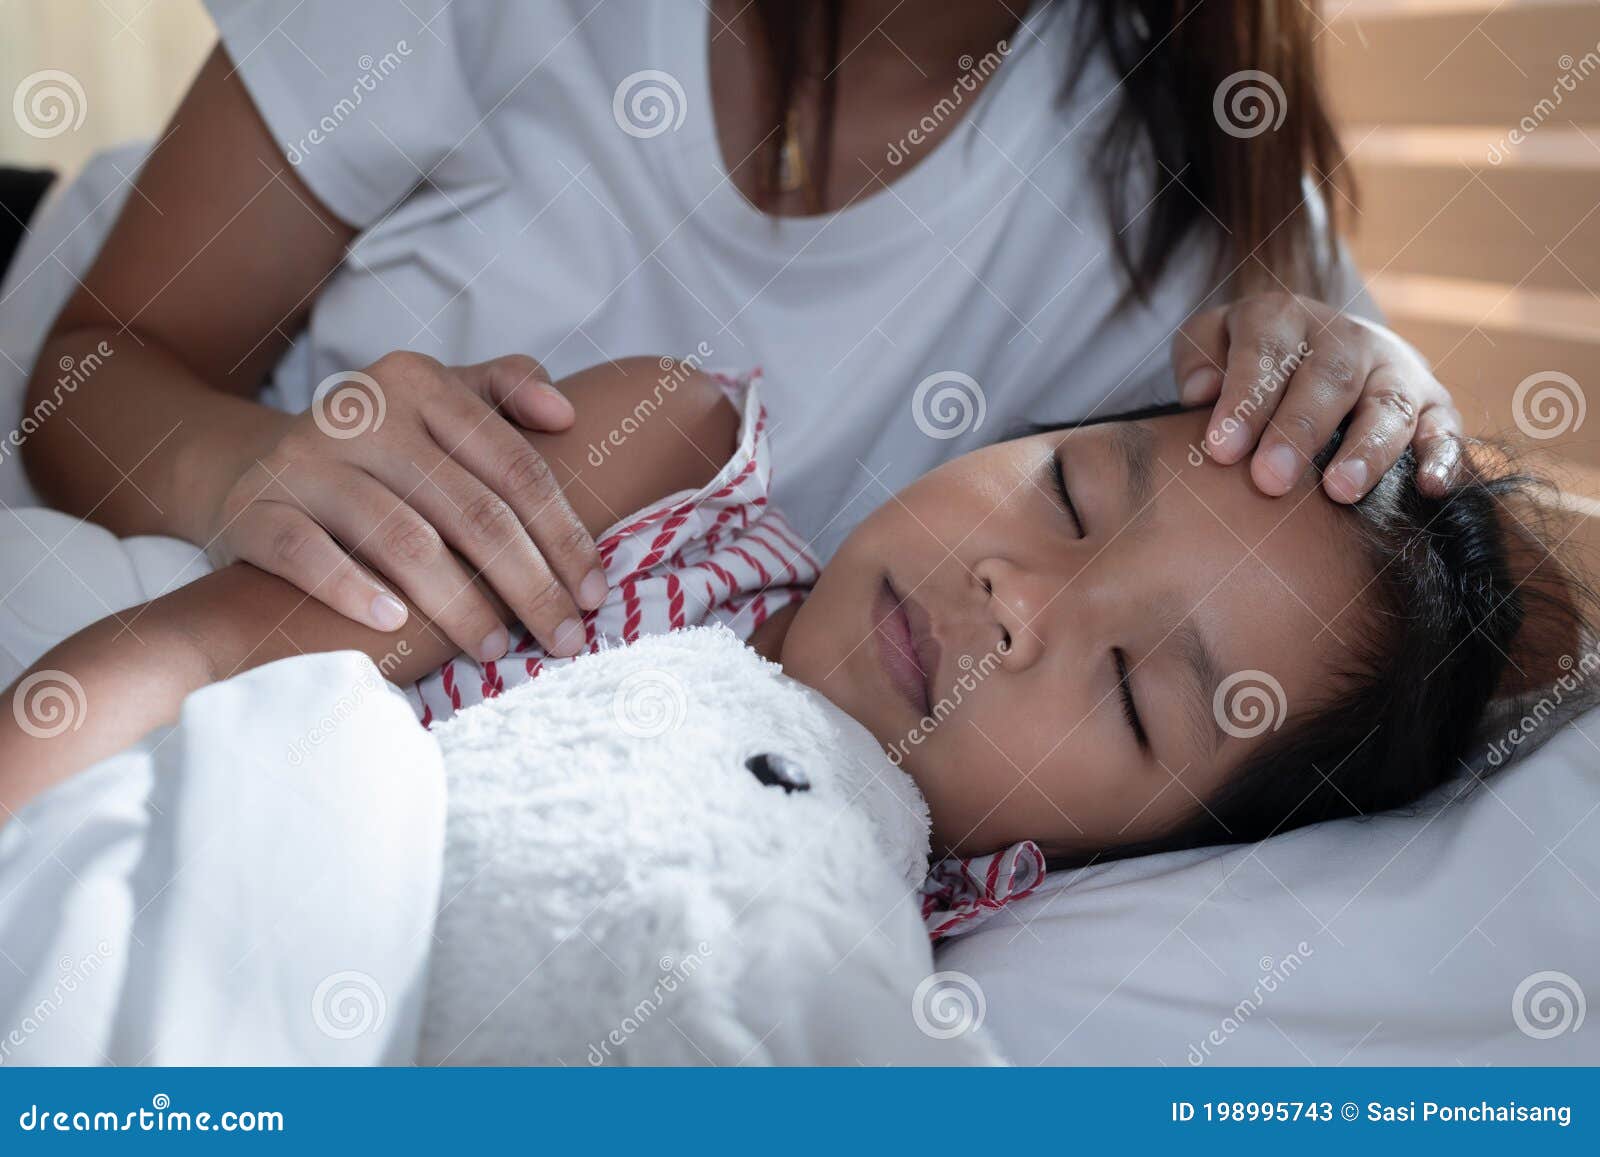 спящая мама азиатка и ее сын фото 85